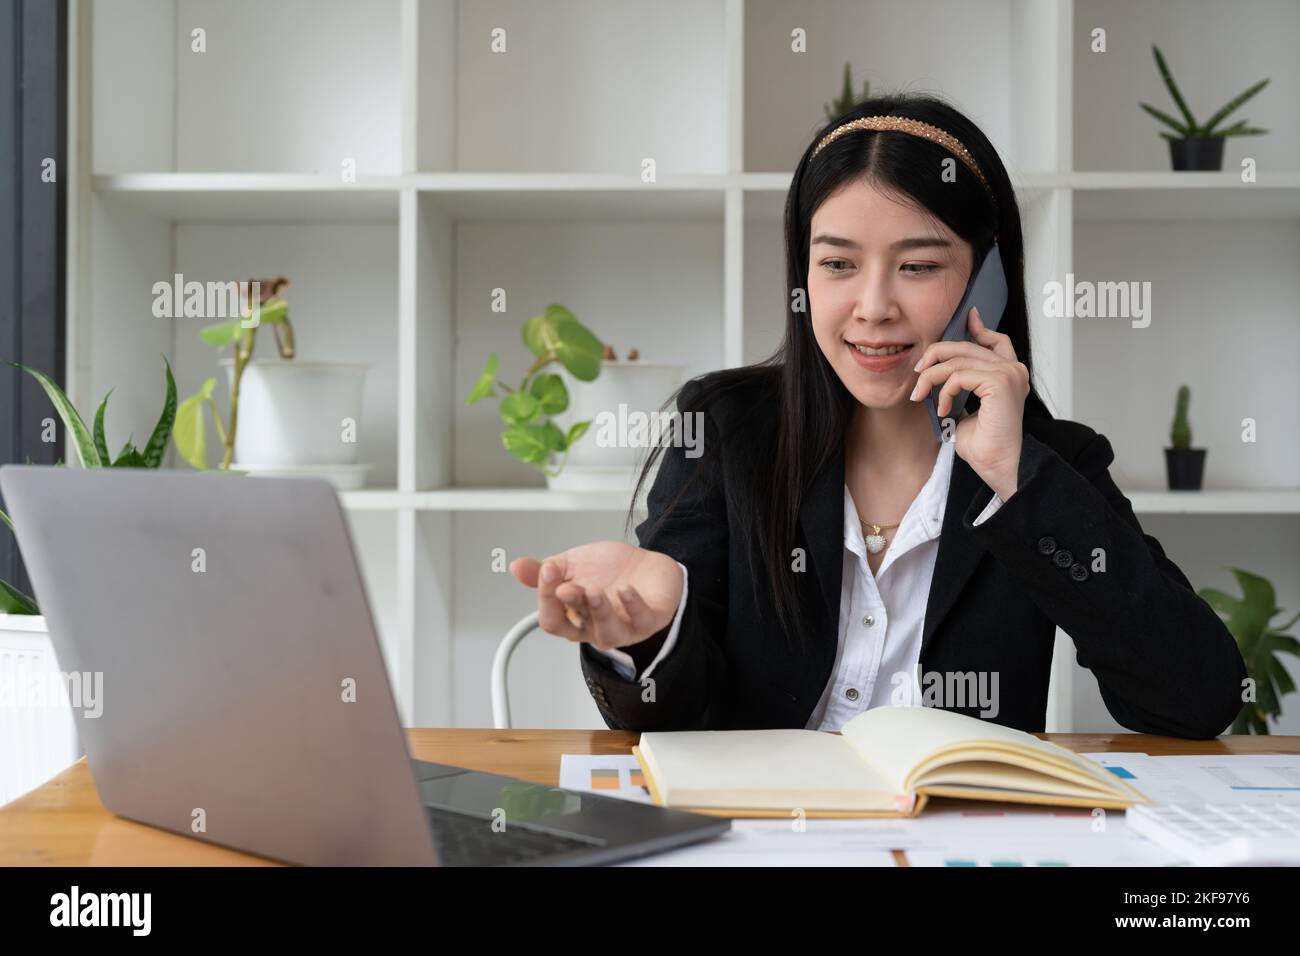 Young Office Asian Frau im Gespräch mit jemandem auf ihrem Handy, während Blick in die Ferne mit glücklichen Gesichtsausdruck. Stockfoto